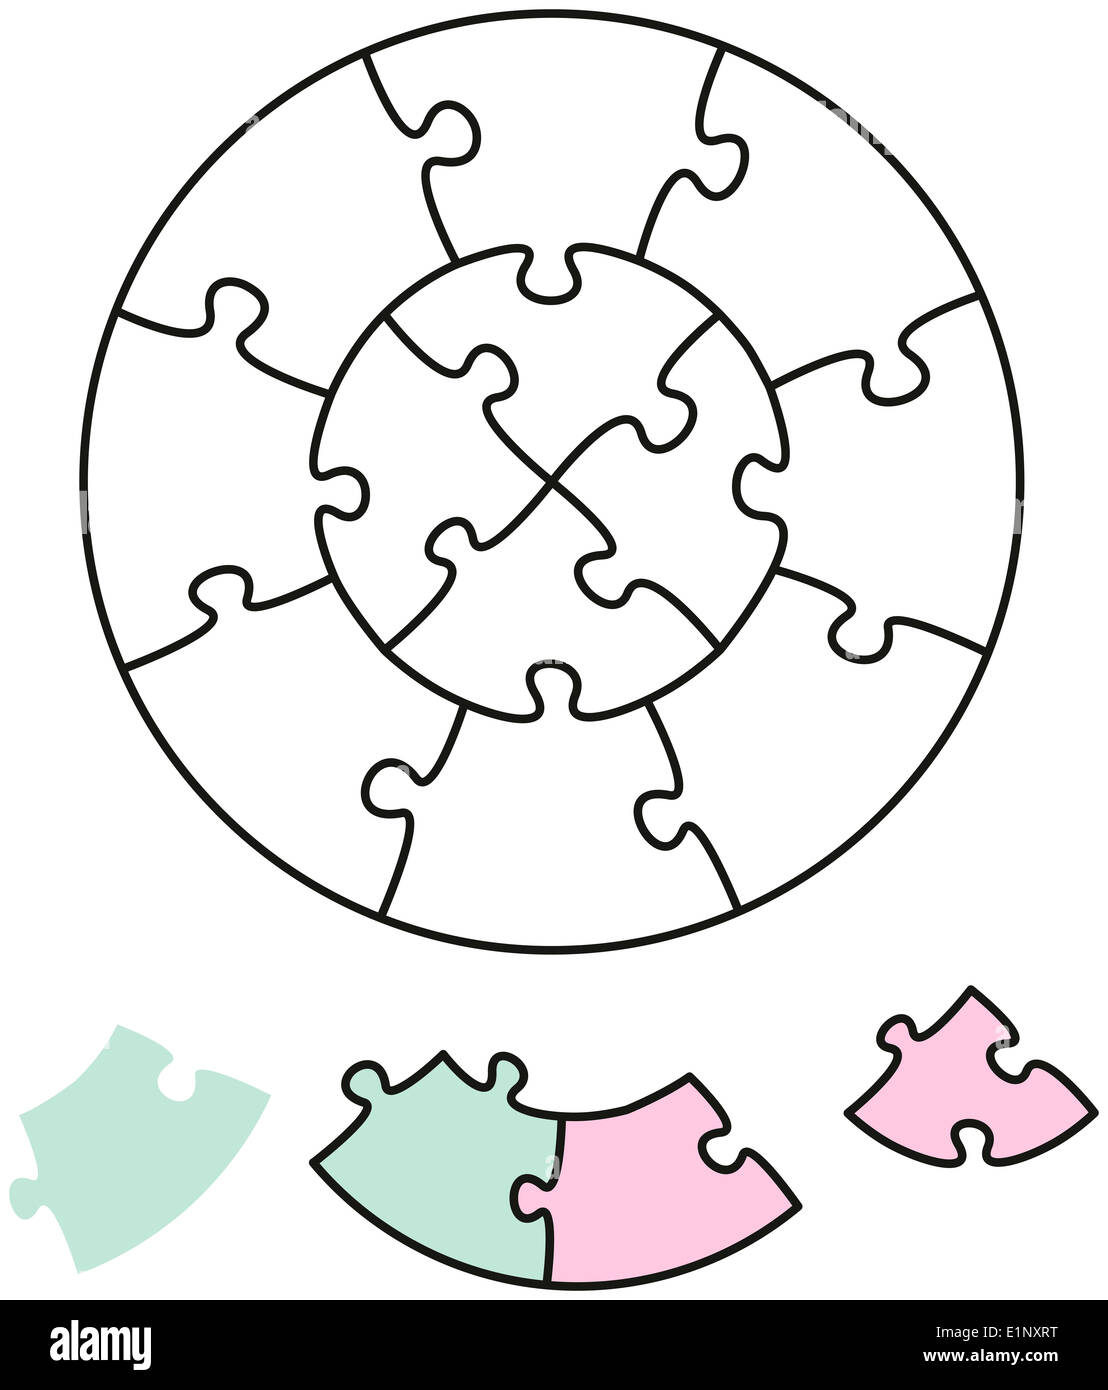 Jigsaw Puzzle dos círculos - rompecabezas en forma de dos círculos Foto de stock